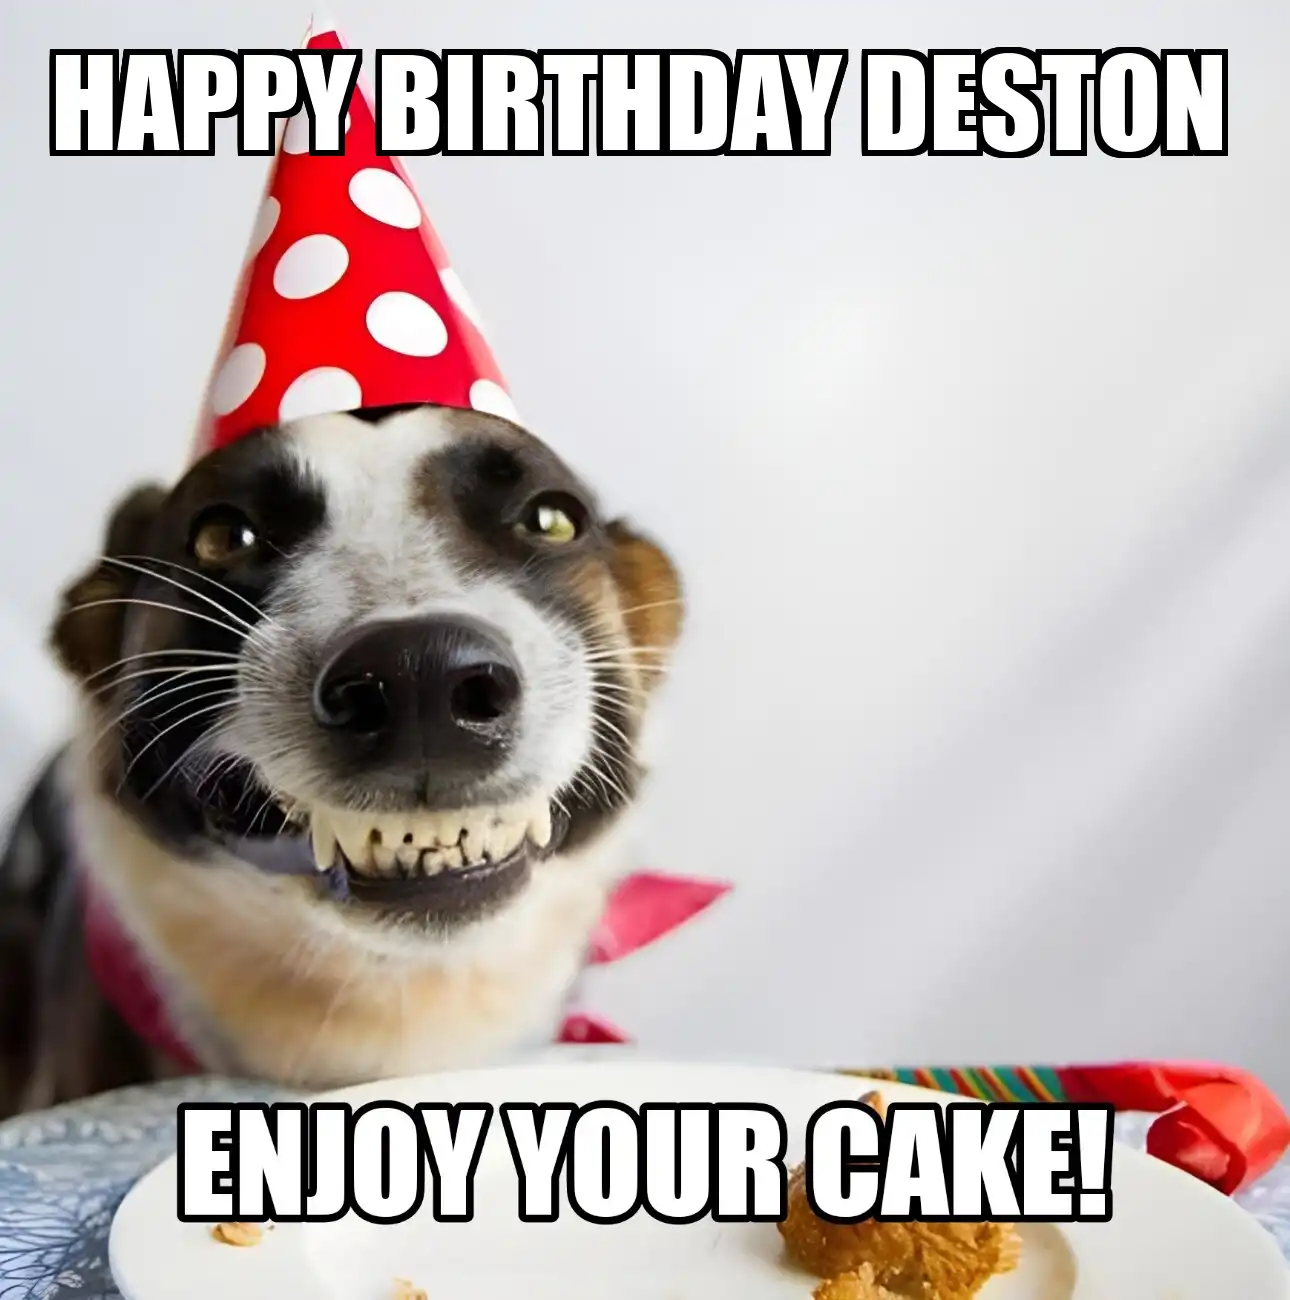 Happy Birthday Deston Enjoy Your Cake Dog Meme